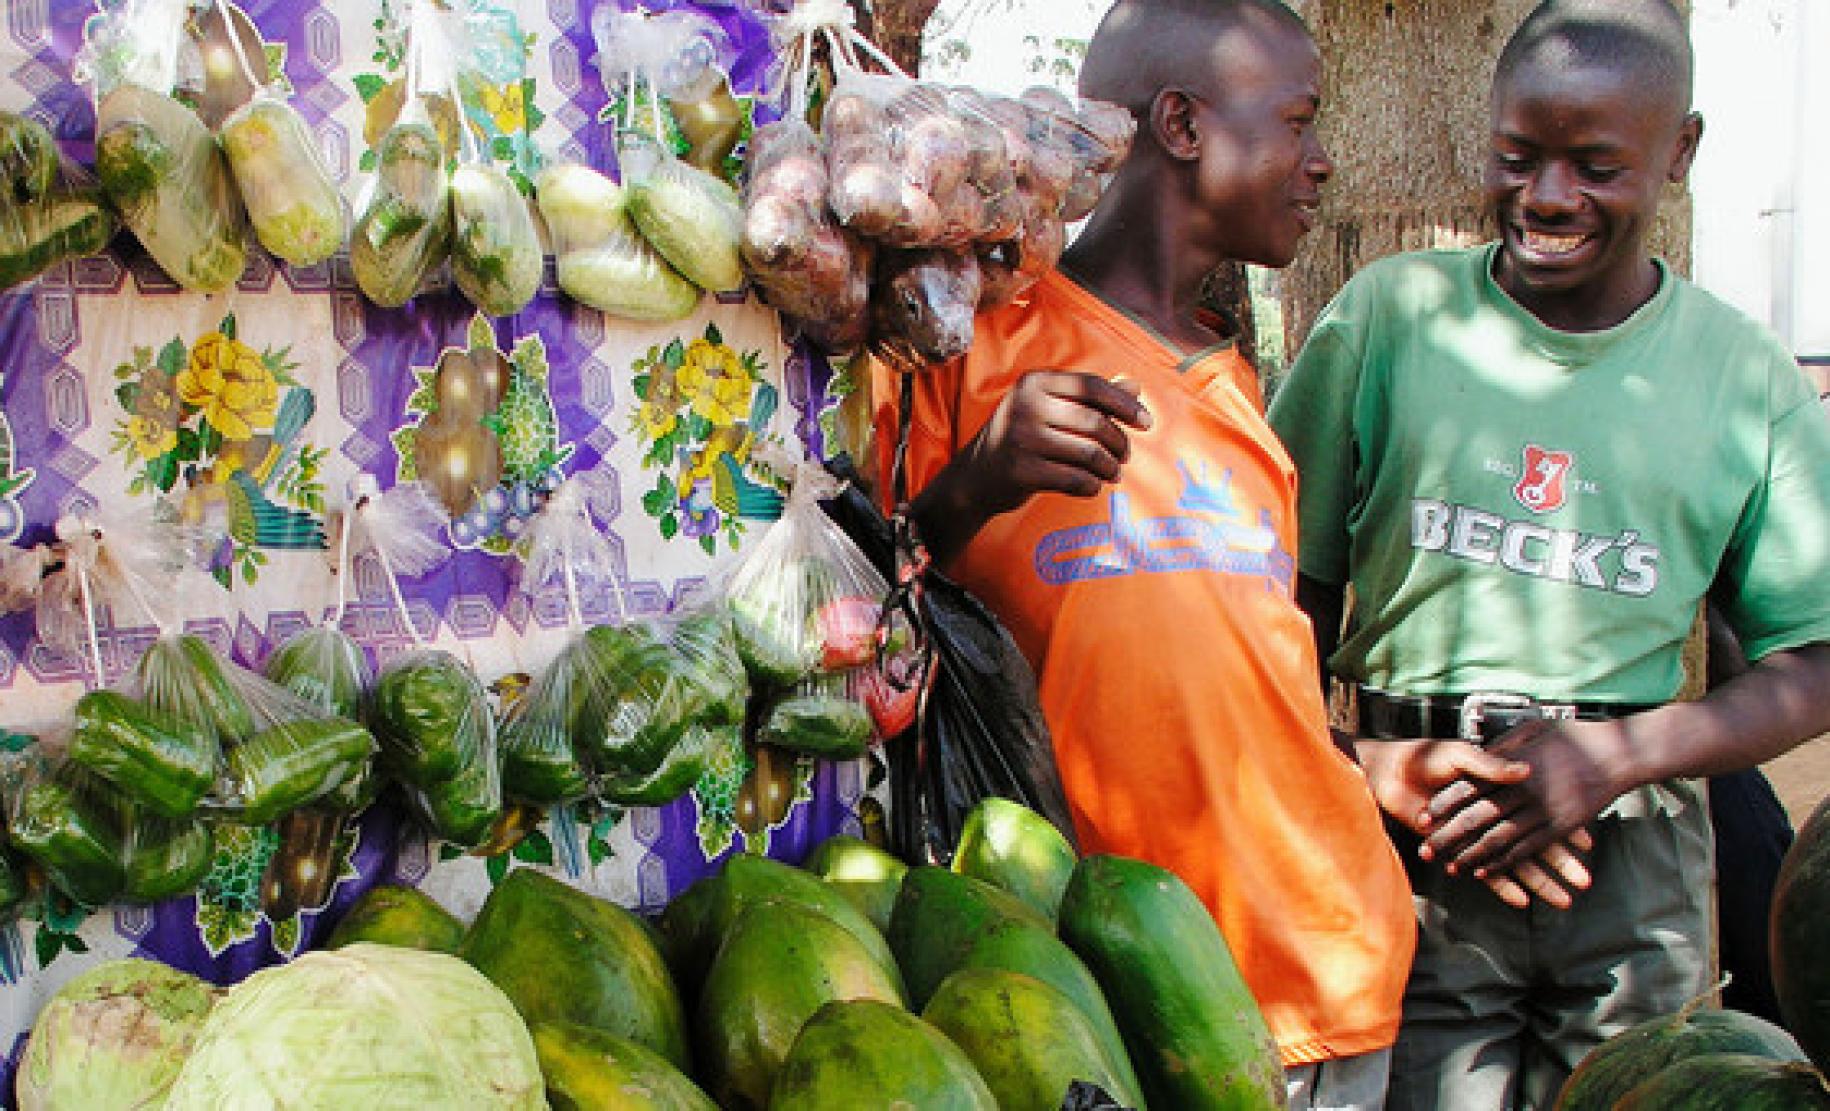 الباعة يتجاذبون أطراف الحديث في كشك لبيع الخضار في أحد الأسواق في كمبالا، أوغندا.